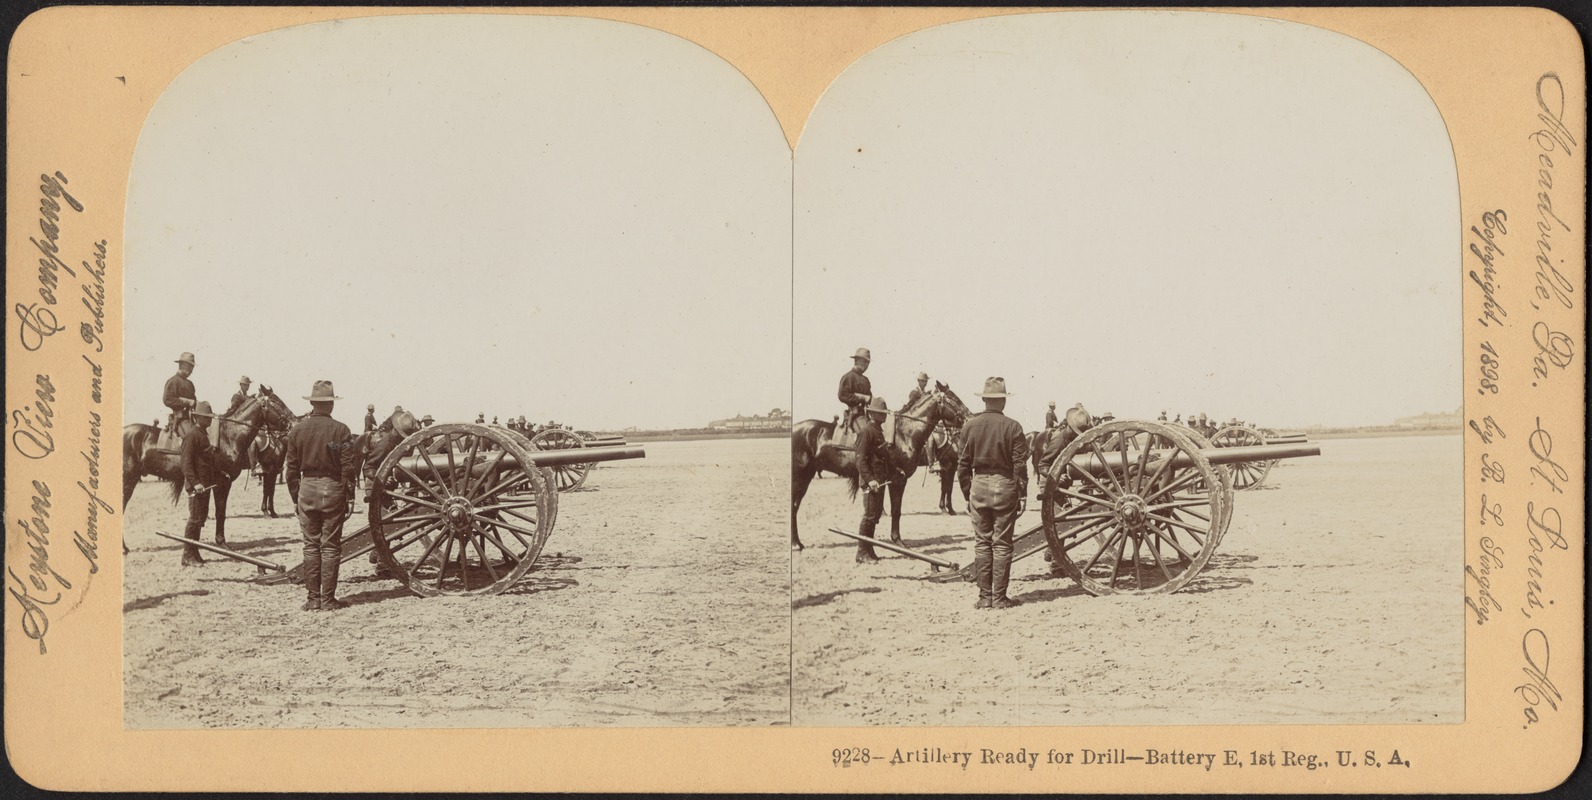 Artillery ready for drill - Battery E, 1st Reg., U.S.A.